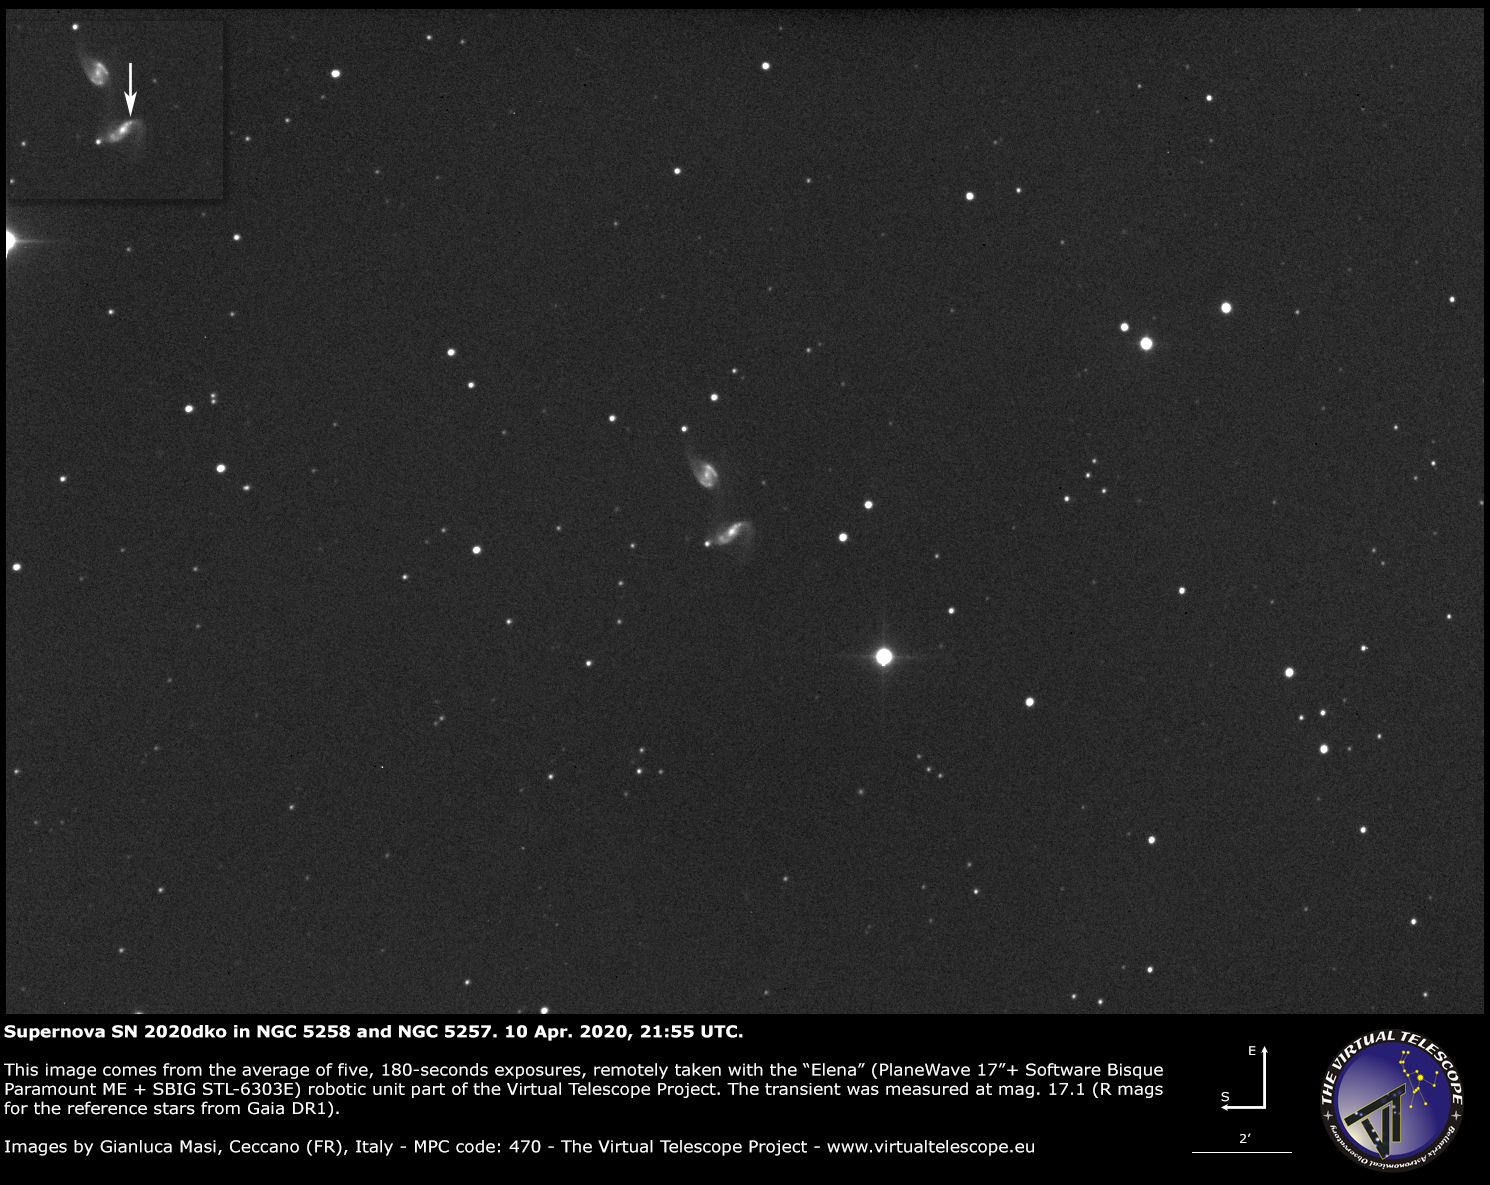 NGC 5258 and supernova SN 2020dko - 10 Apr. 2020